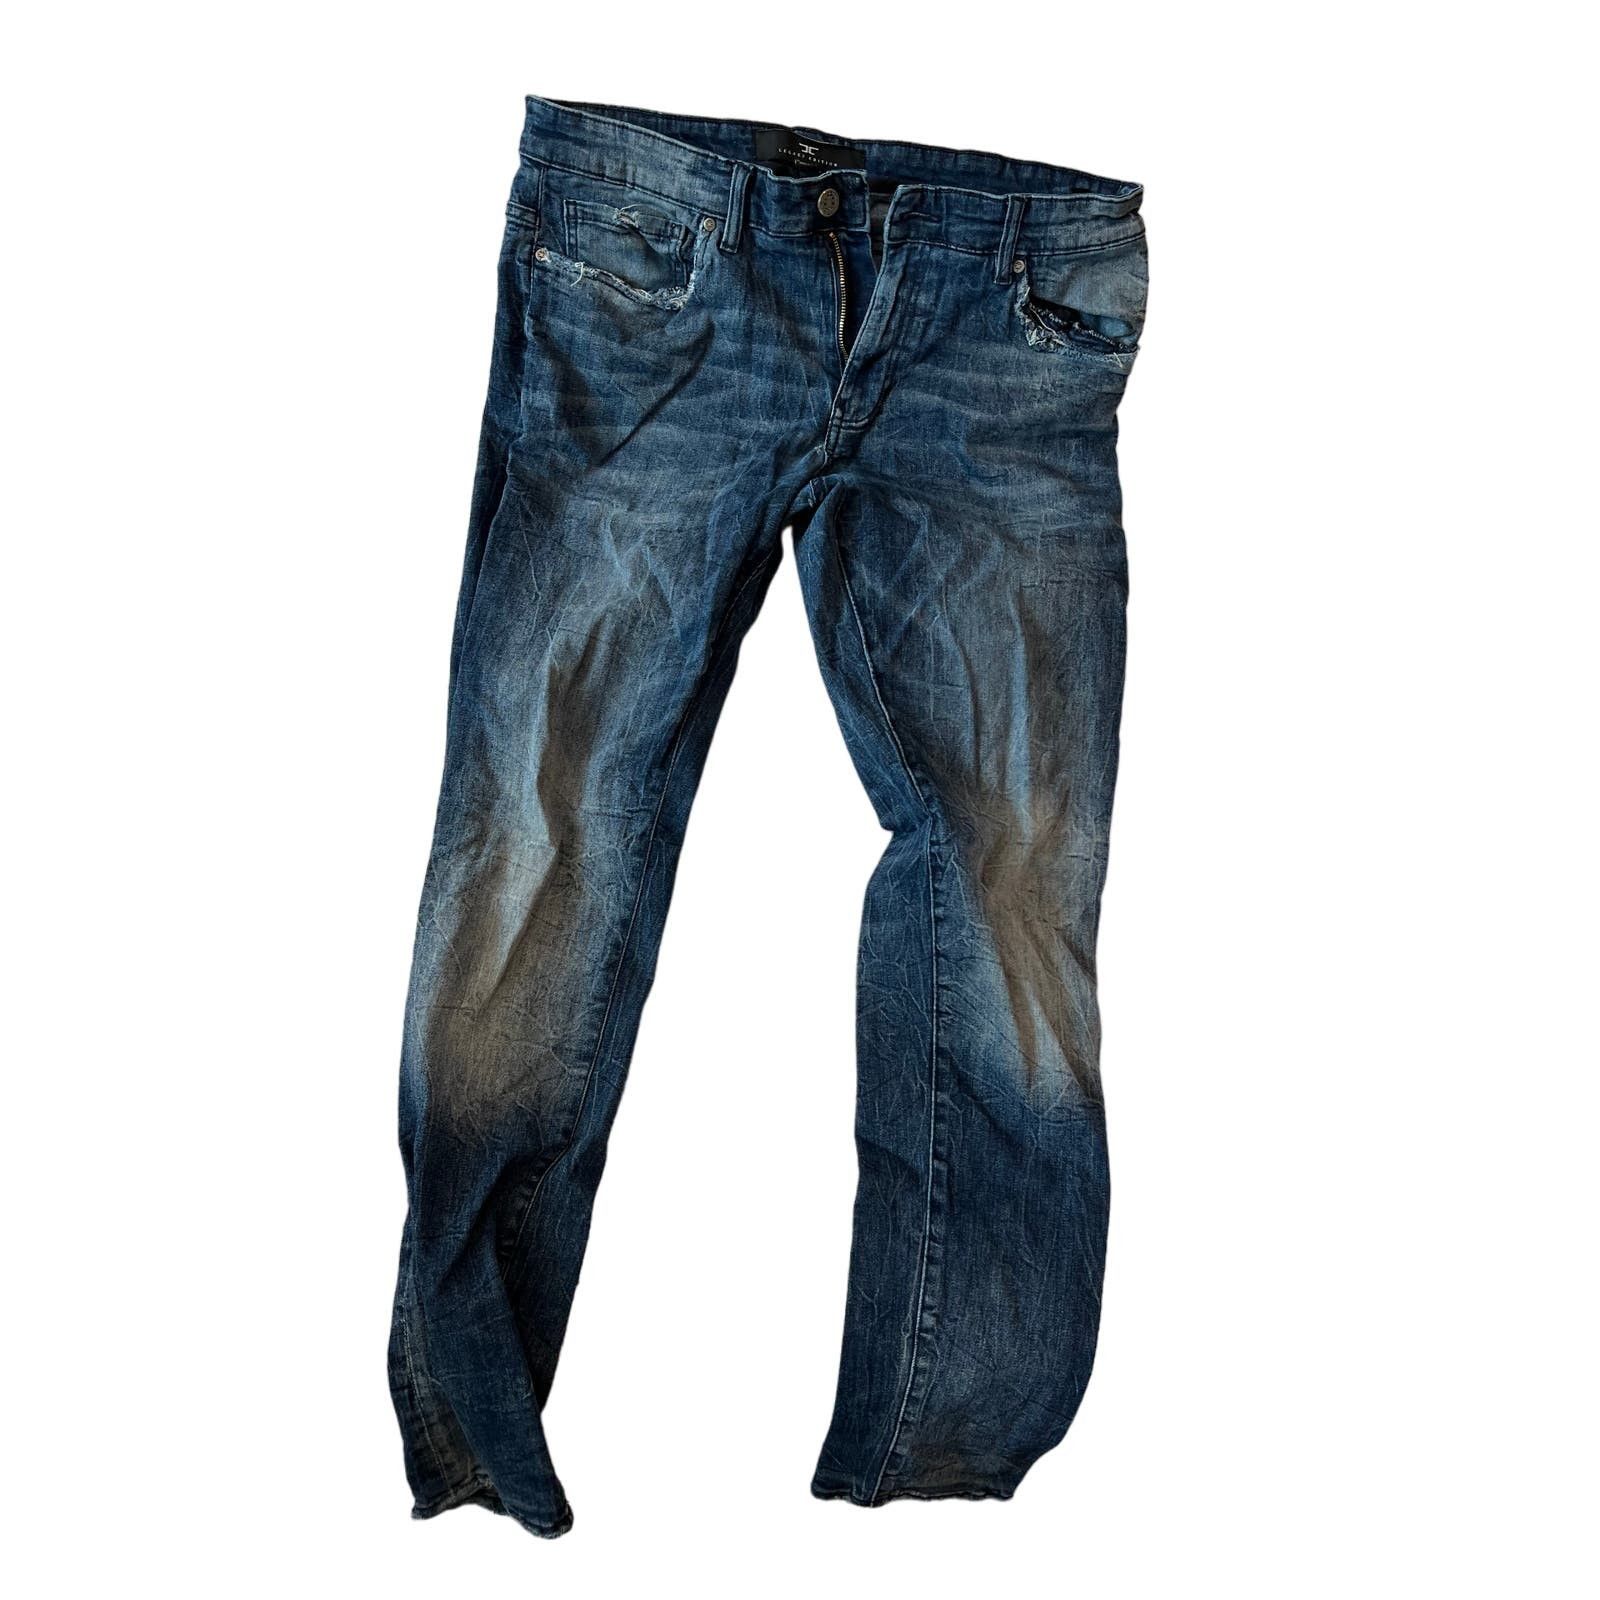 Jordan Craig Jordan Craig Distressed Ross Blue Jeans Mens 36x34 Size US 36 / EU 52 - 1 Preview